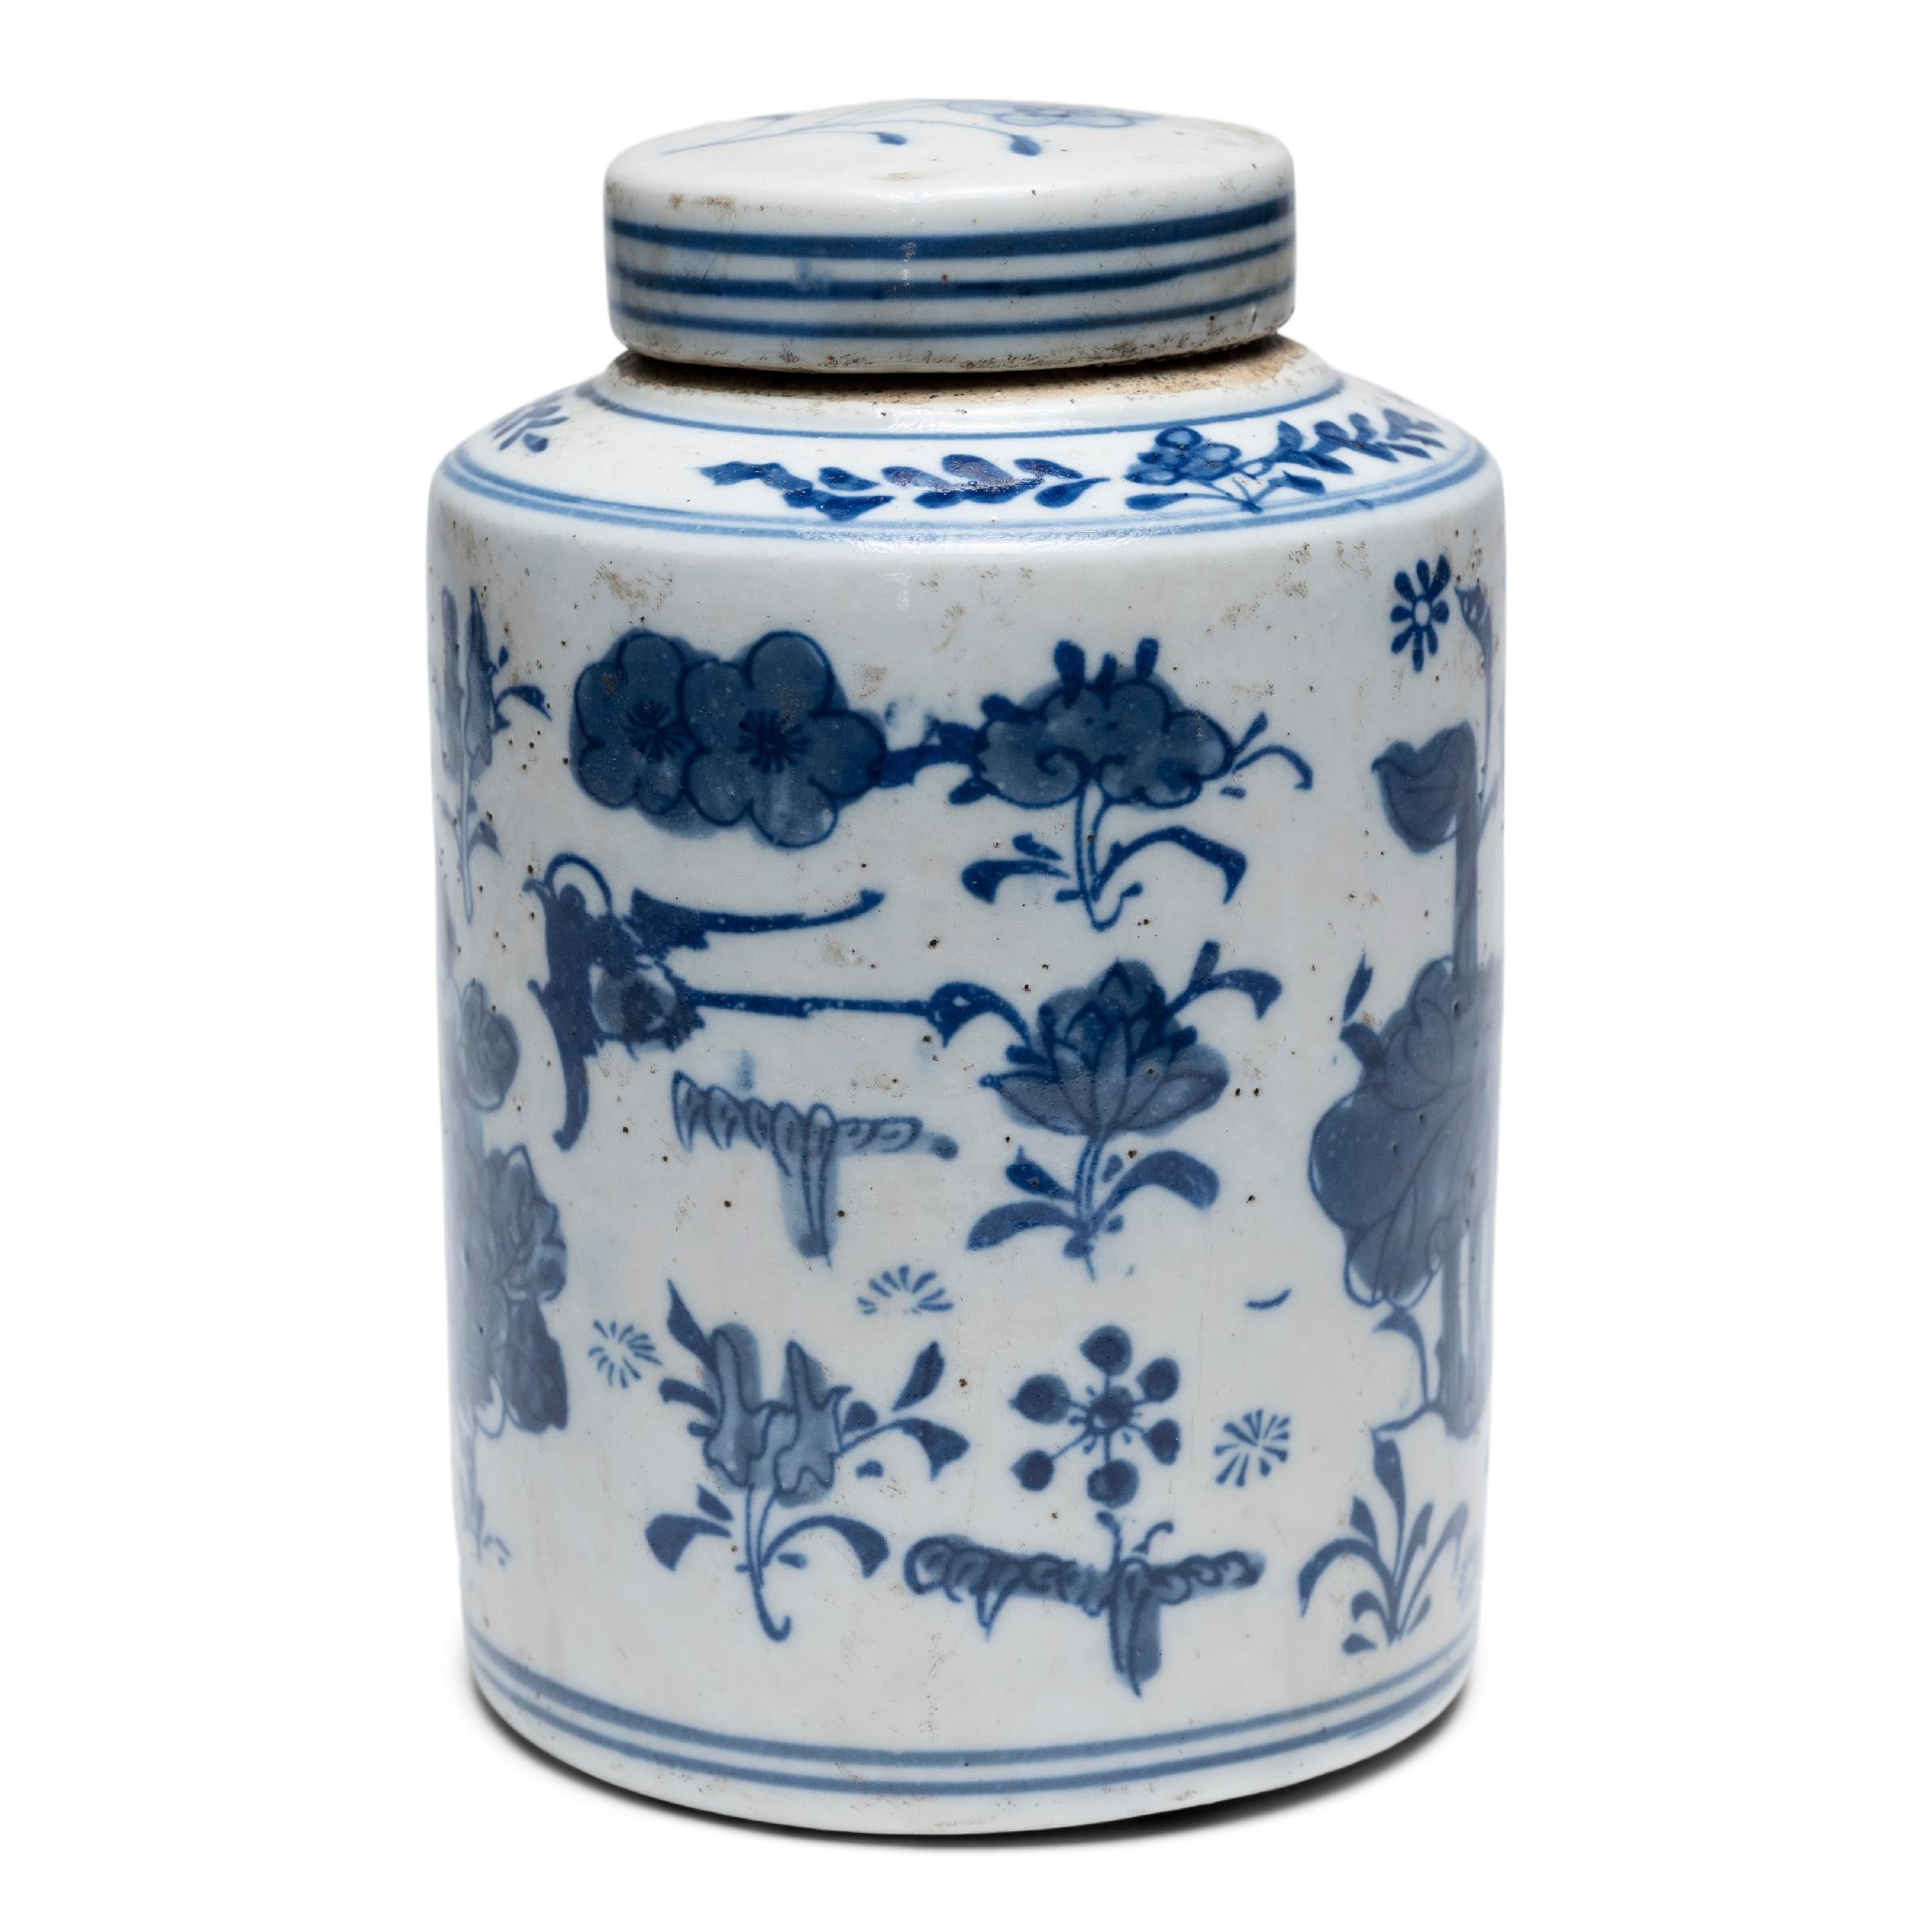 Les jarres à couvercle de ce type étaient utilisées dans les salons de thé de toute la Chine, où la consommation de thé était un symbole de goût et de raffinement de la classe supérieure. Cette jarre à feuilles de thé date du début du 20e siècle et